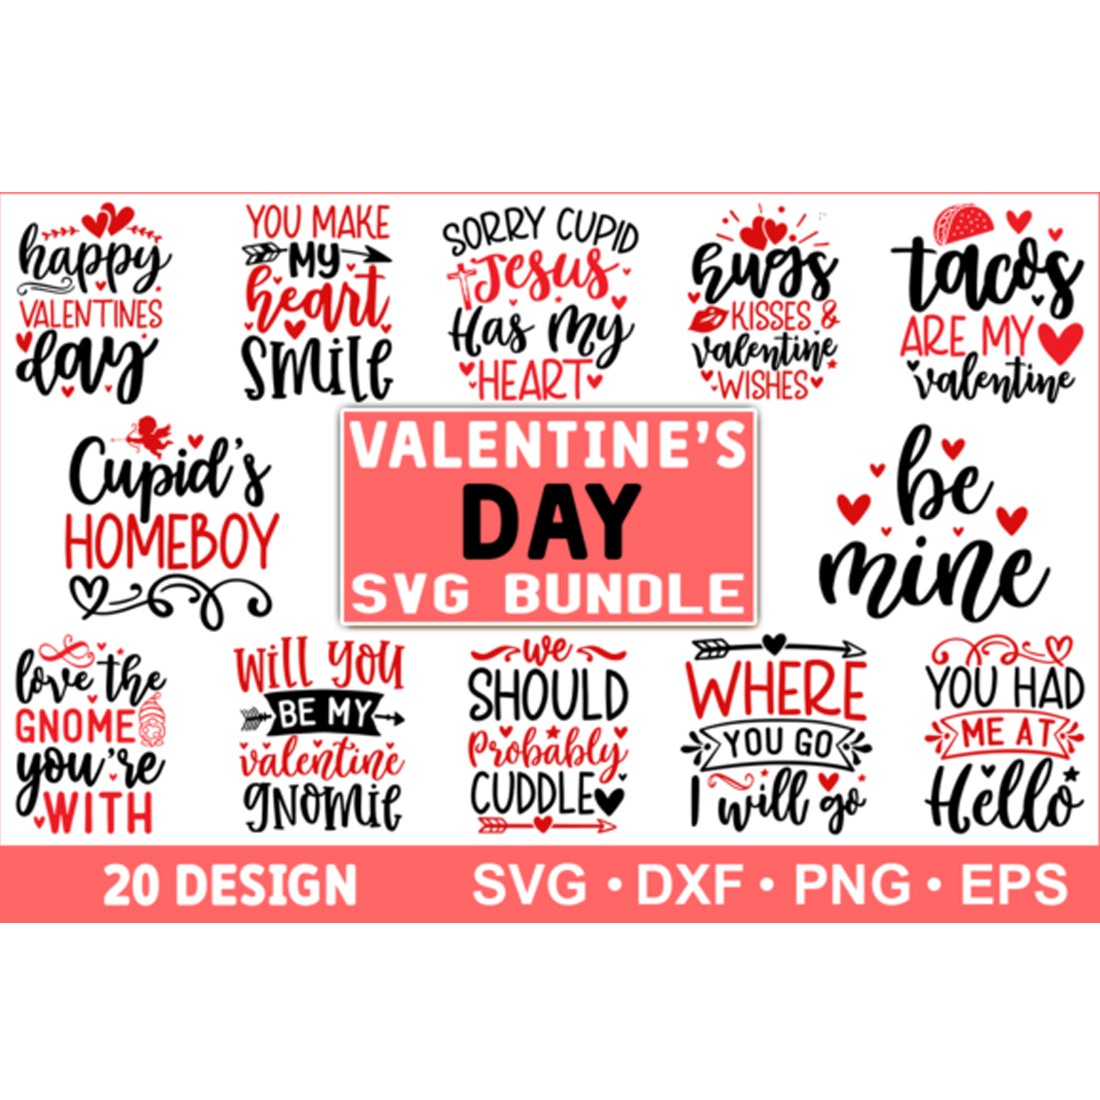 Valentine's Day SVG Bundle Design cover image.